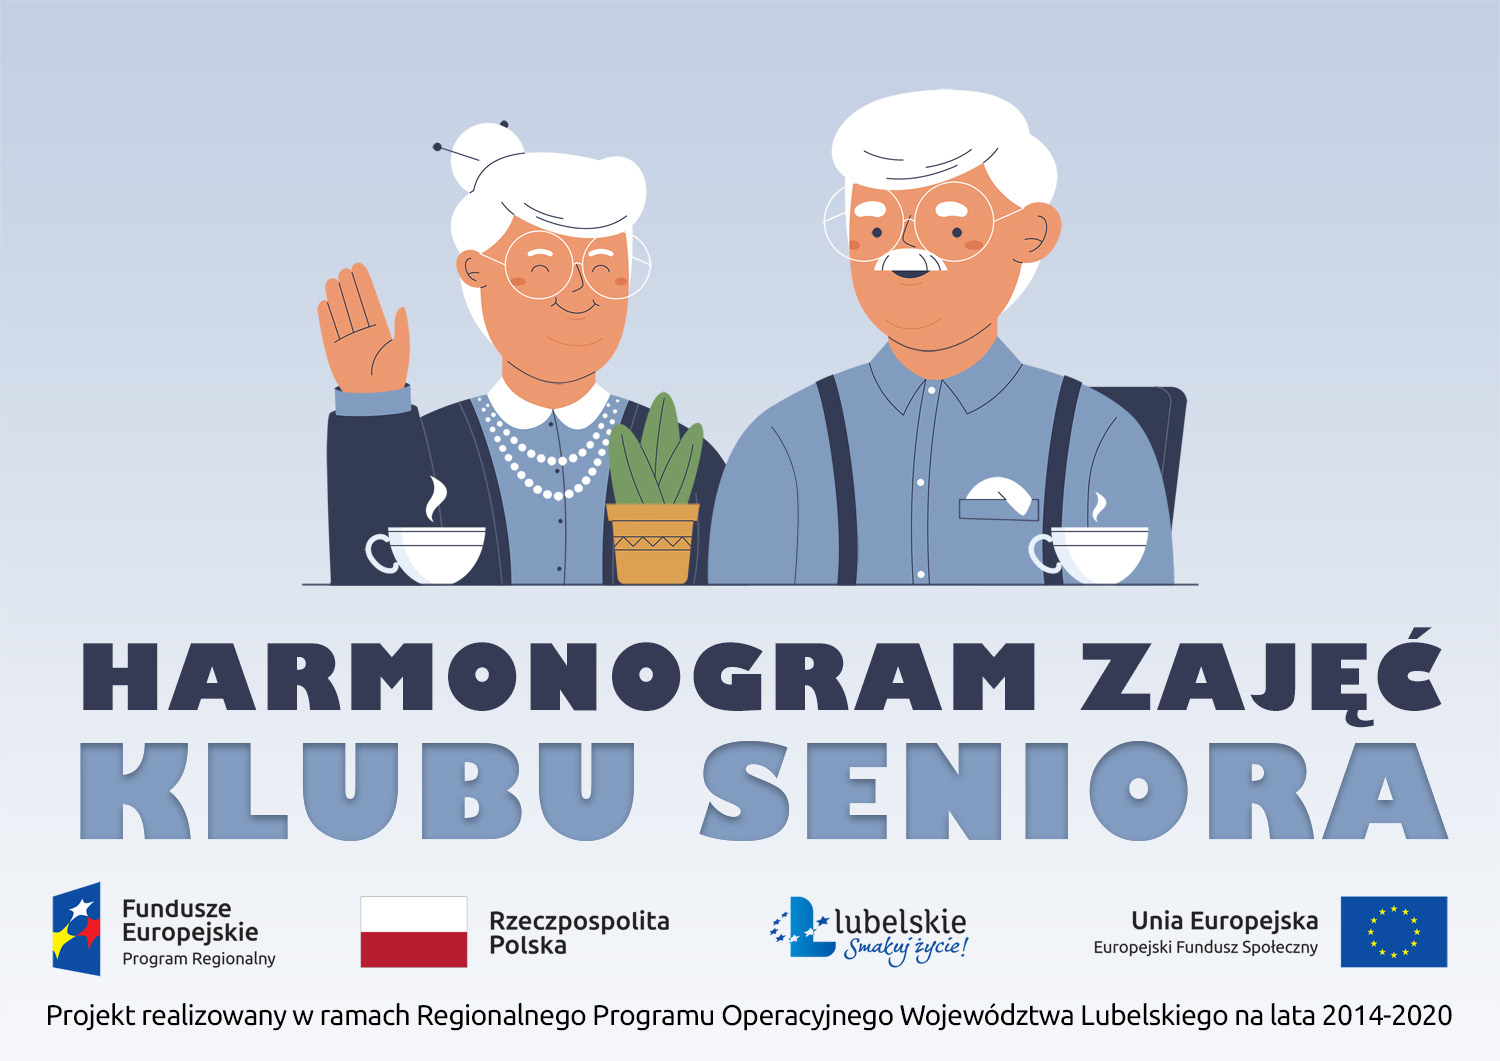 Grafika przedstawia tekst „Harmonogram zajęć Klubu Seniora”, poniżej znaki funduszy europejskich oraz tekst „Projekt realizowany w ramach Regionalnego Programu Operacyjnego Województwa Lubelskiego na lata 2014-2020”